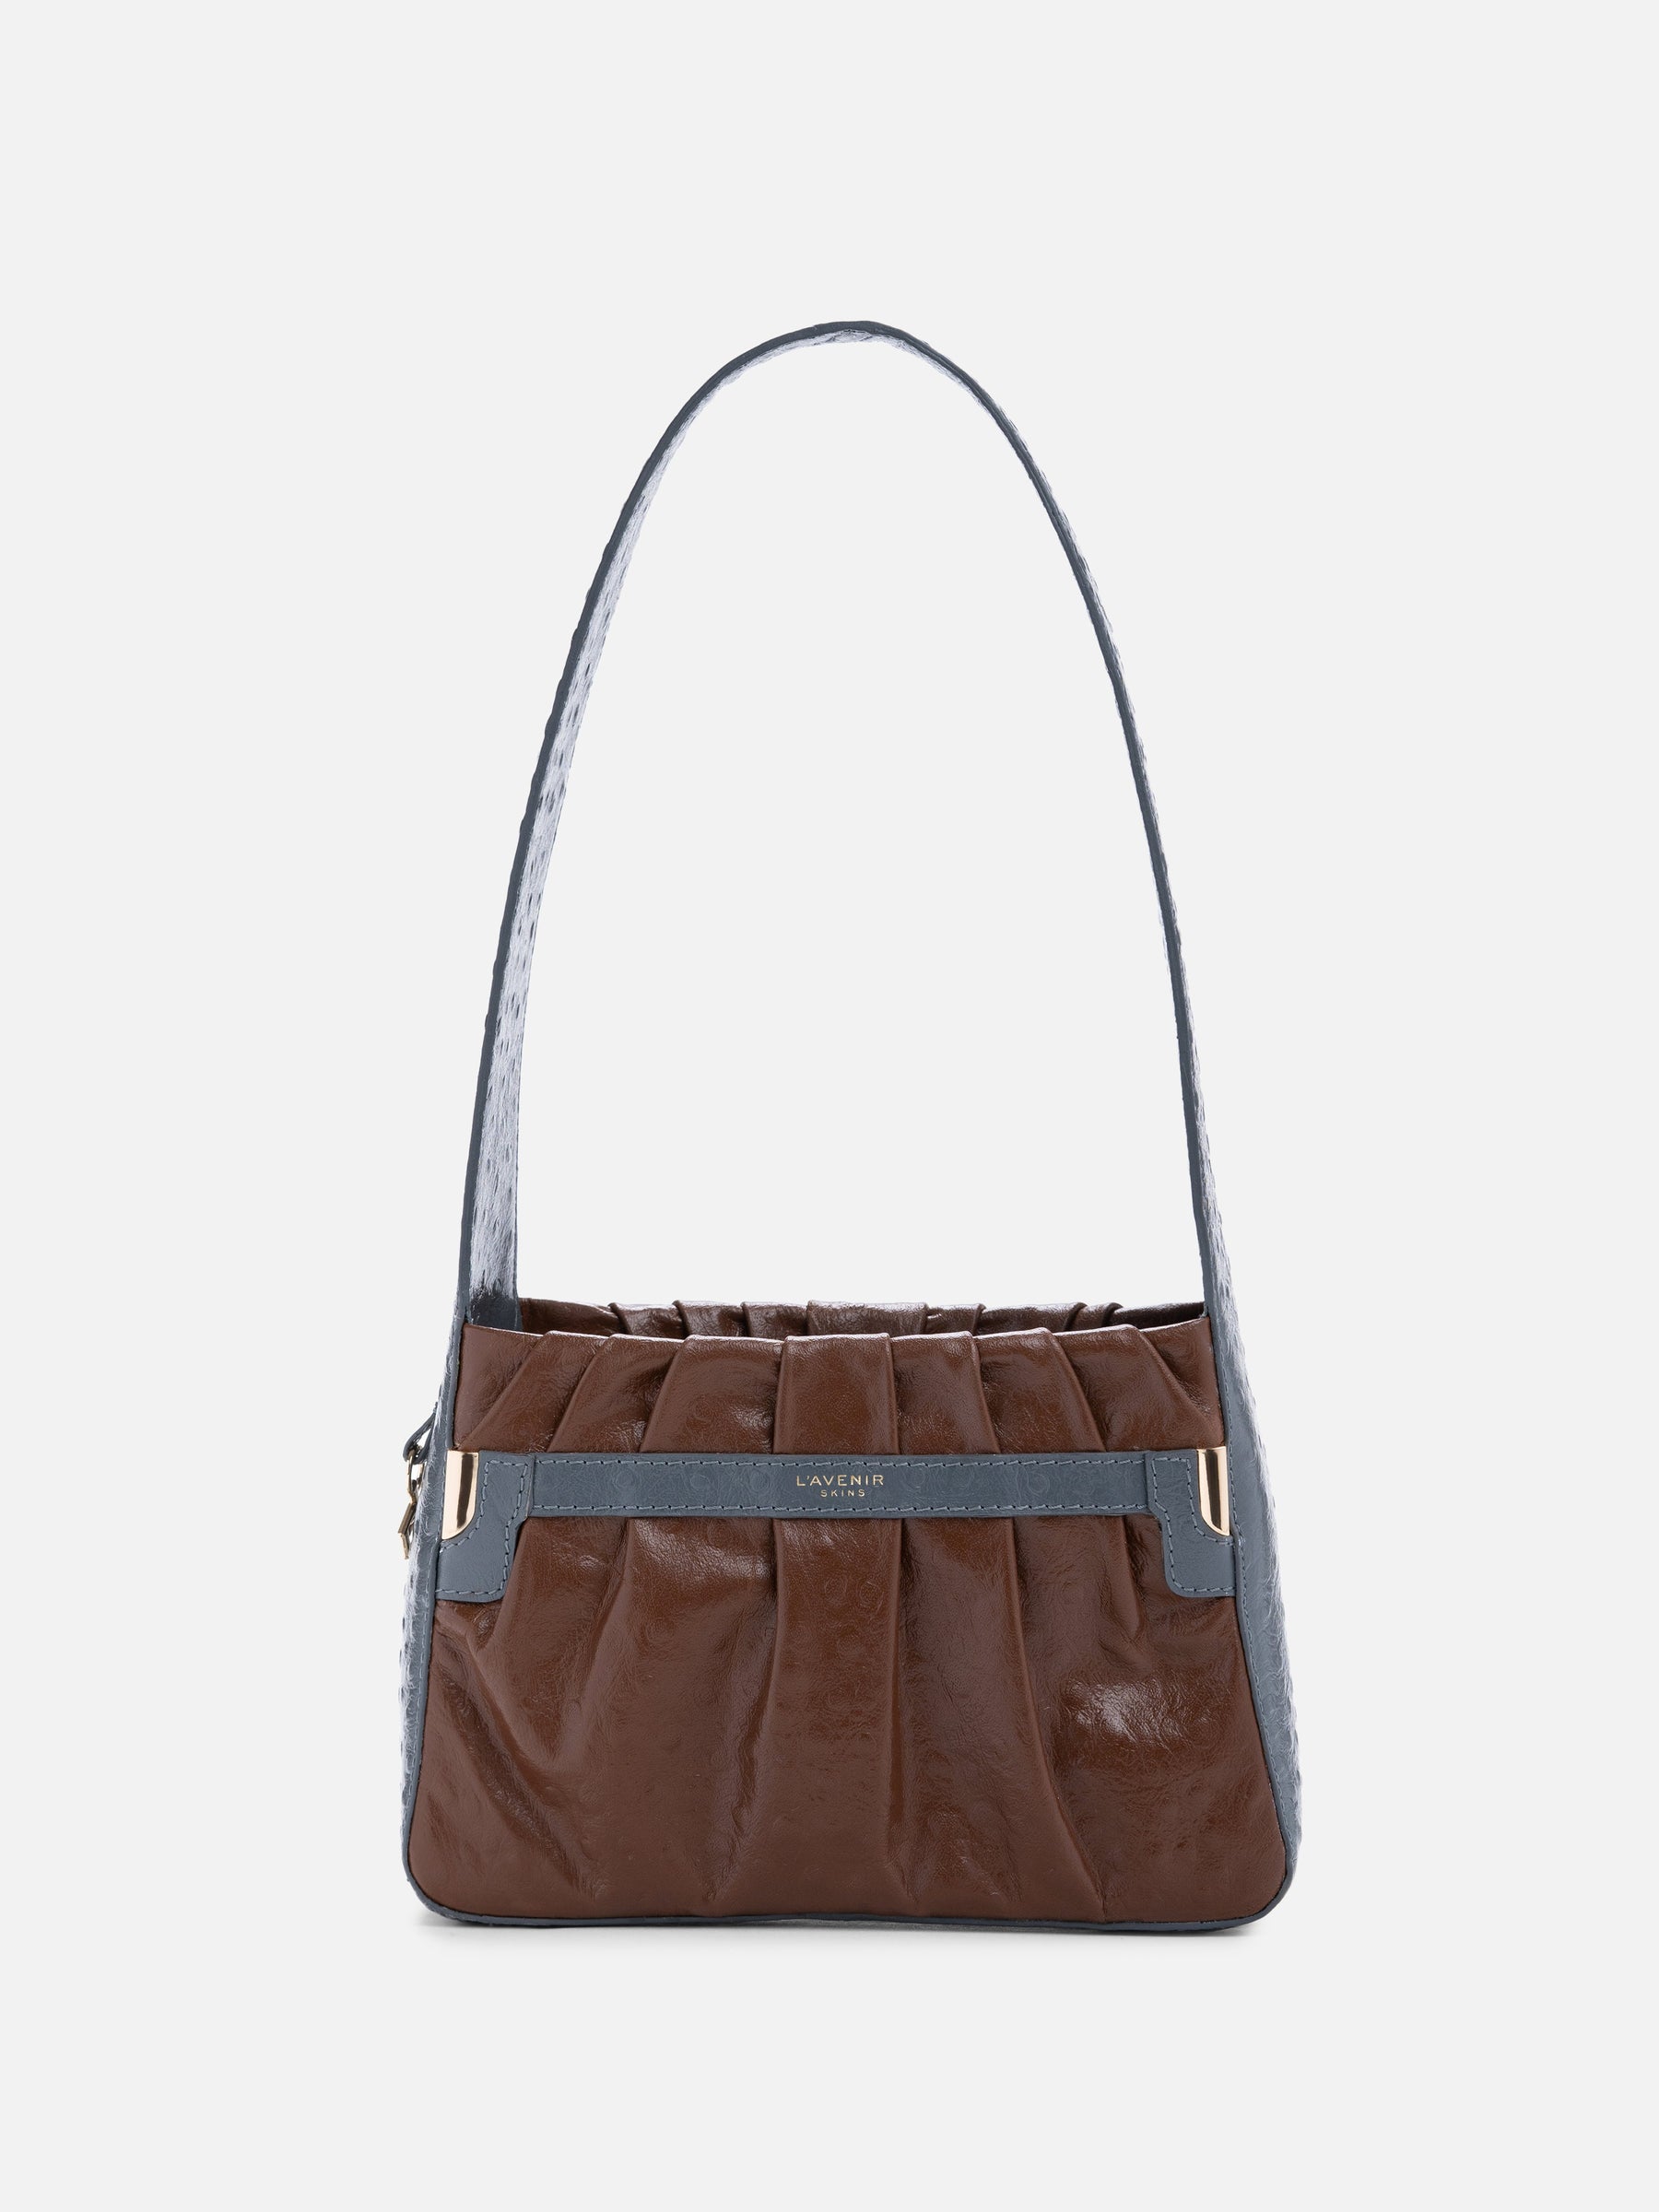 Bagatelle Shoulder Bag - Grey & Brown